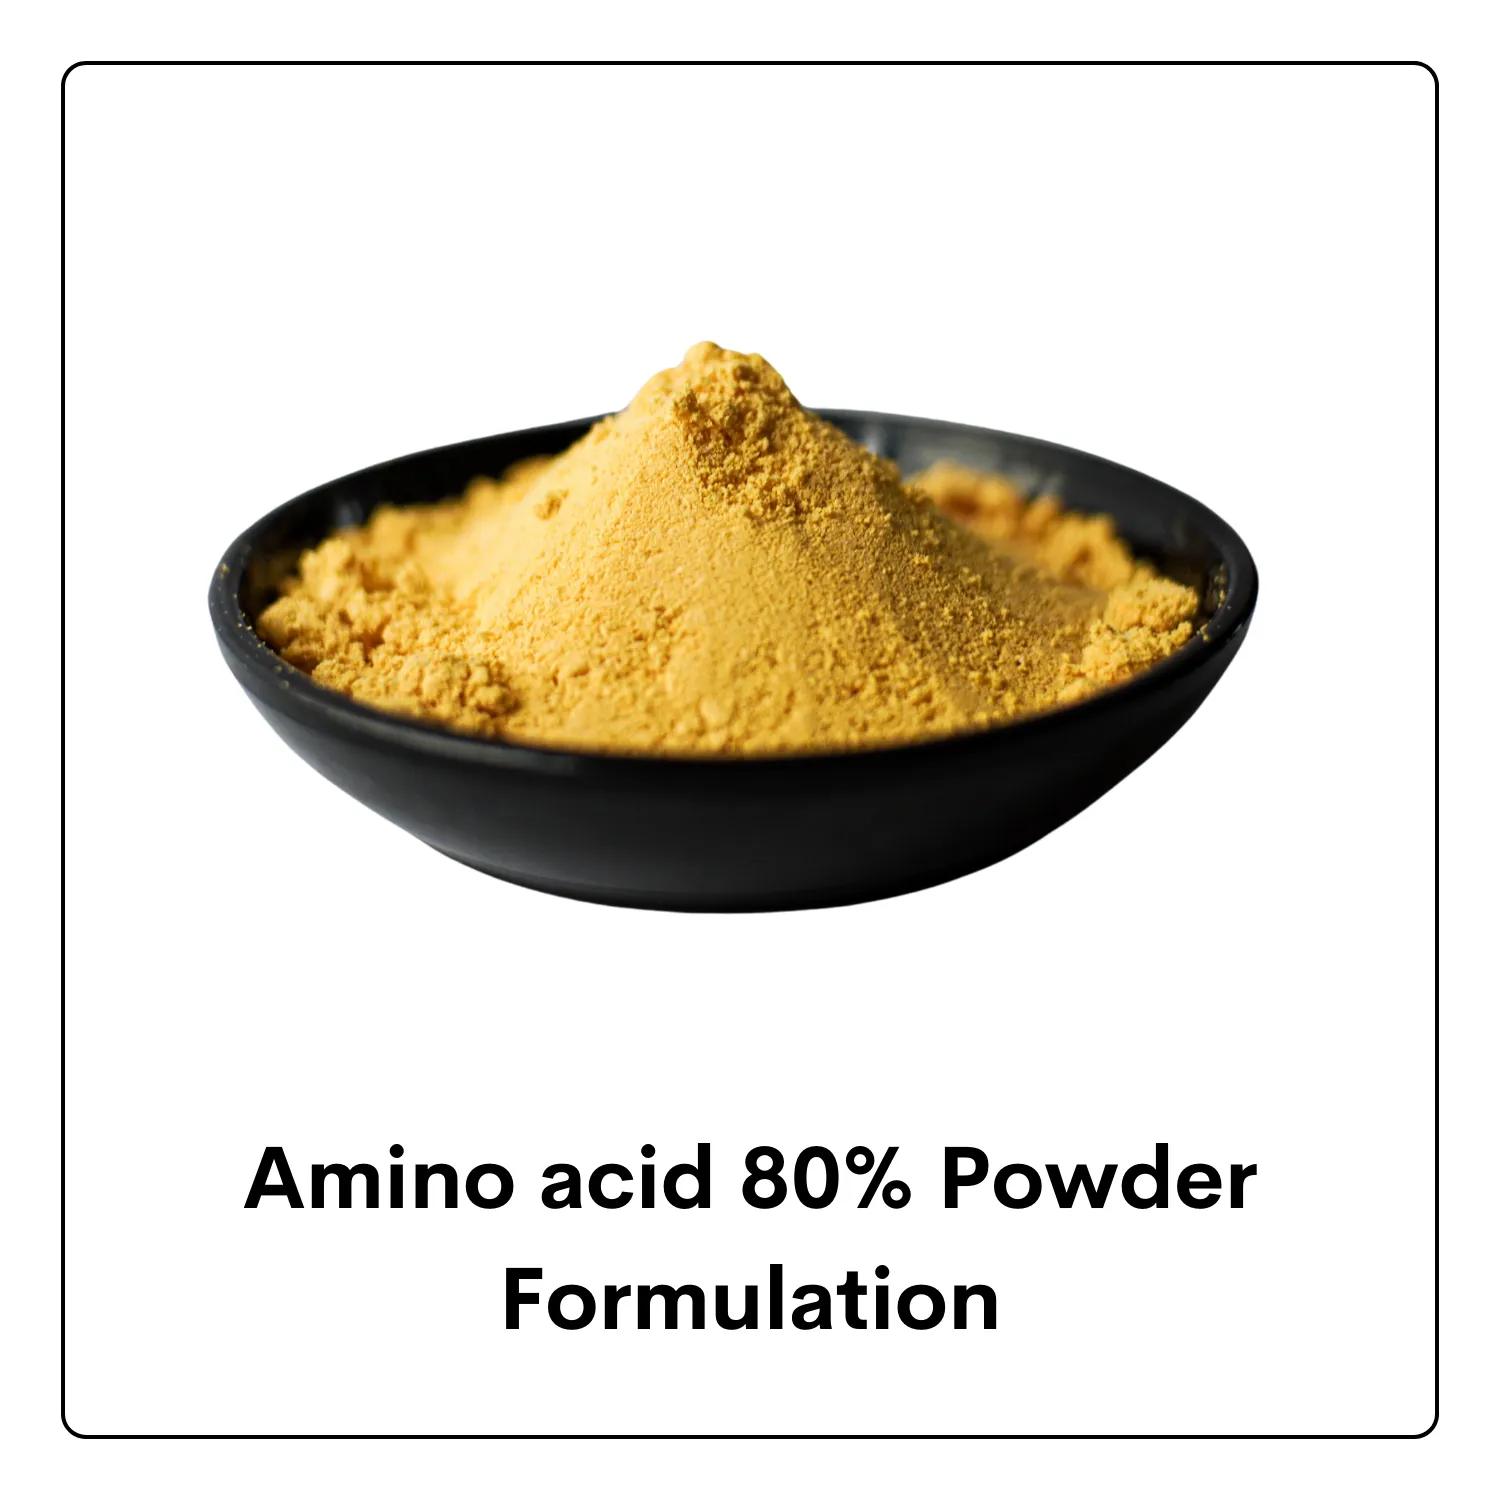 Amino acid Powder